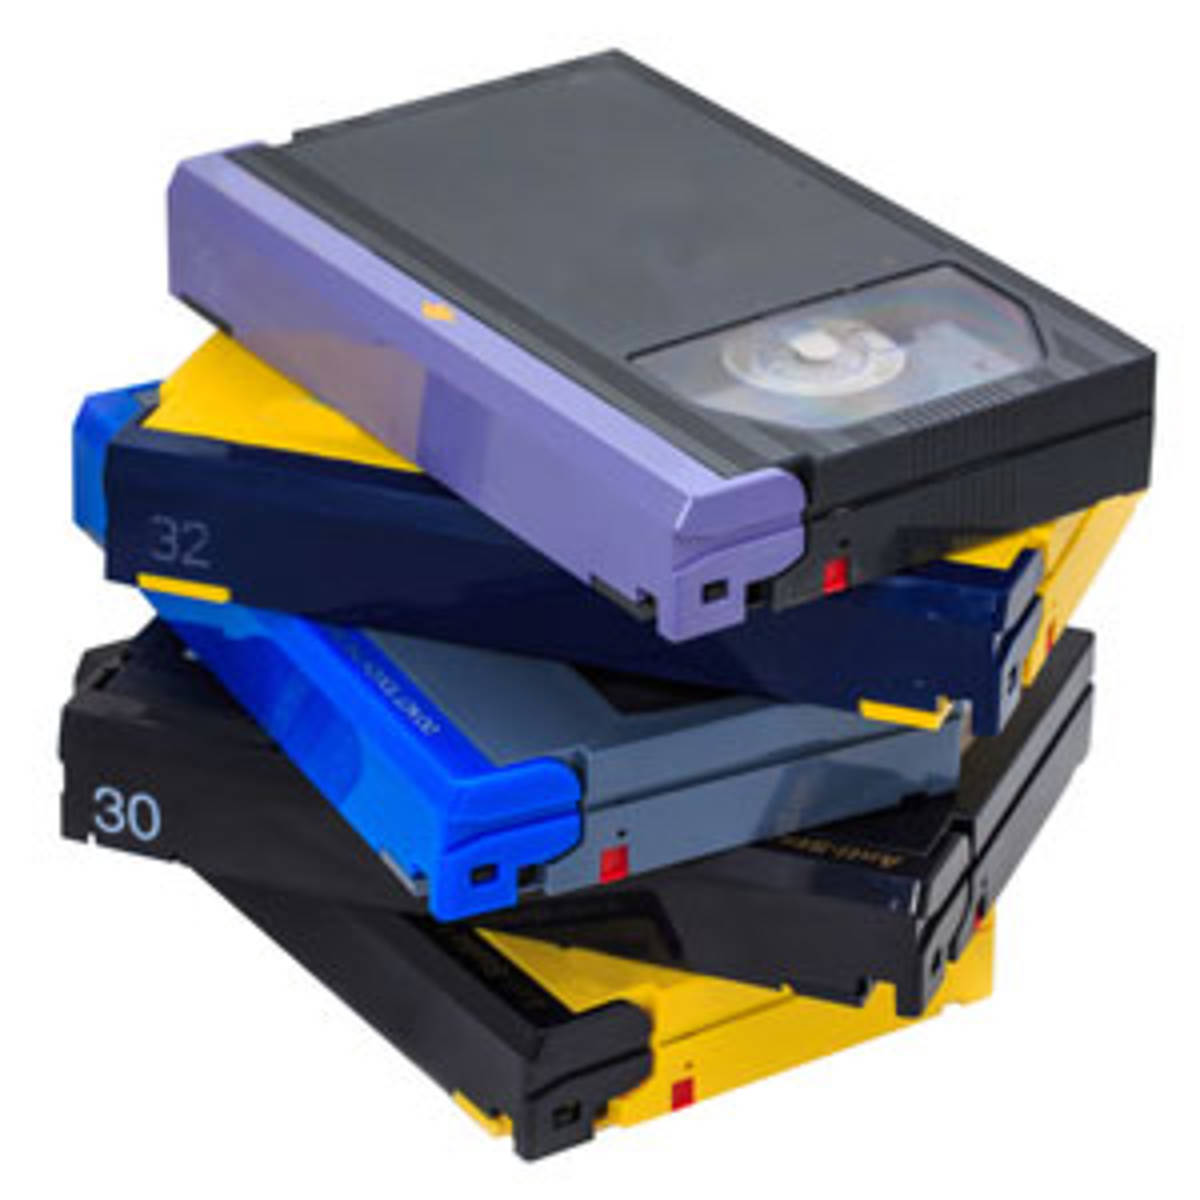 Numériser des cassettes vidéo Betamax